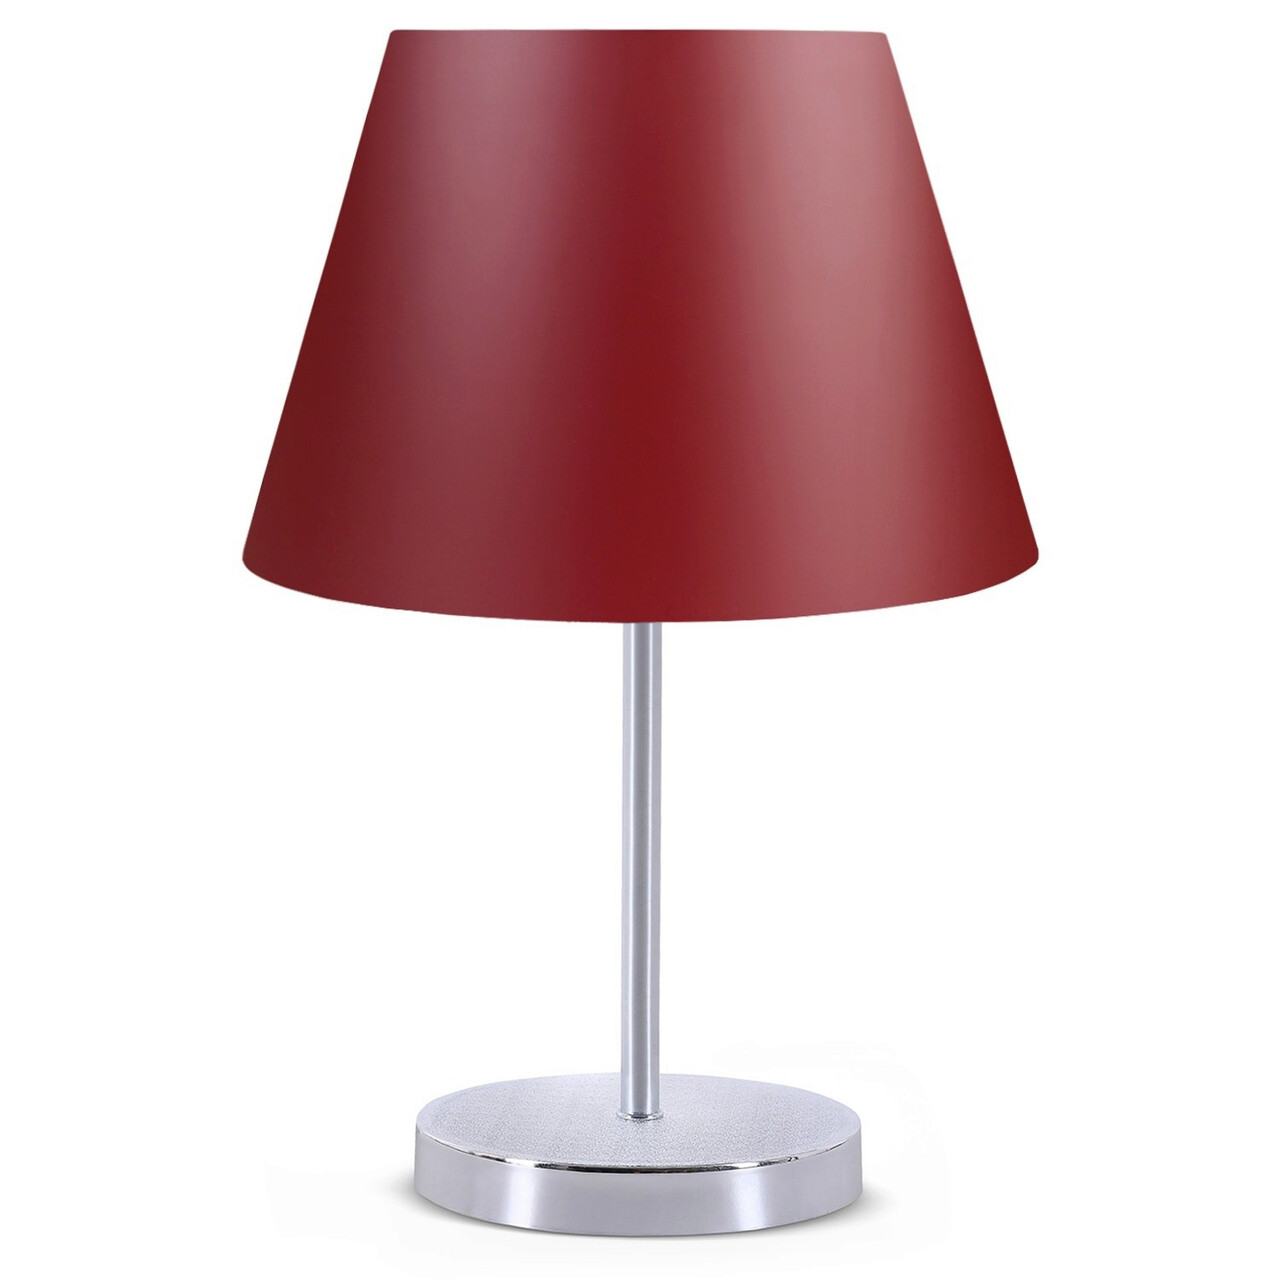 Lampa De Masa, Insignio, 780SGN1826, PVC, Rosu Claret